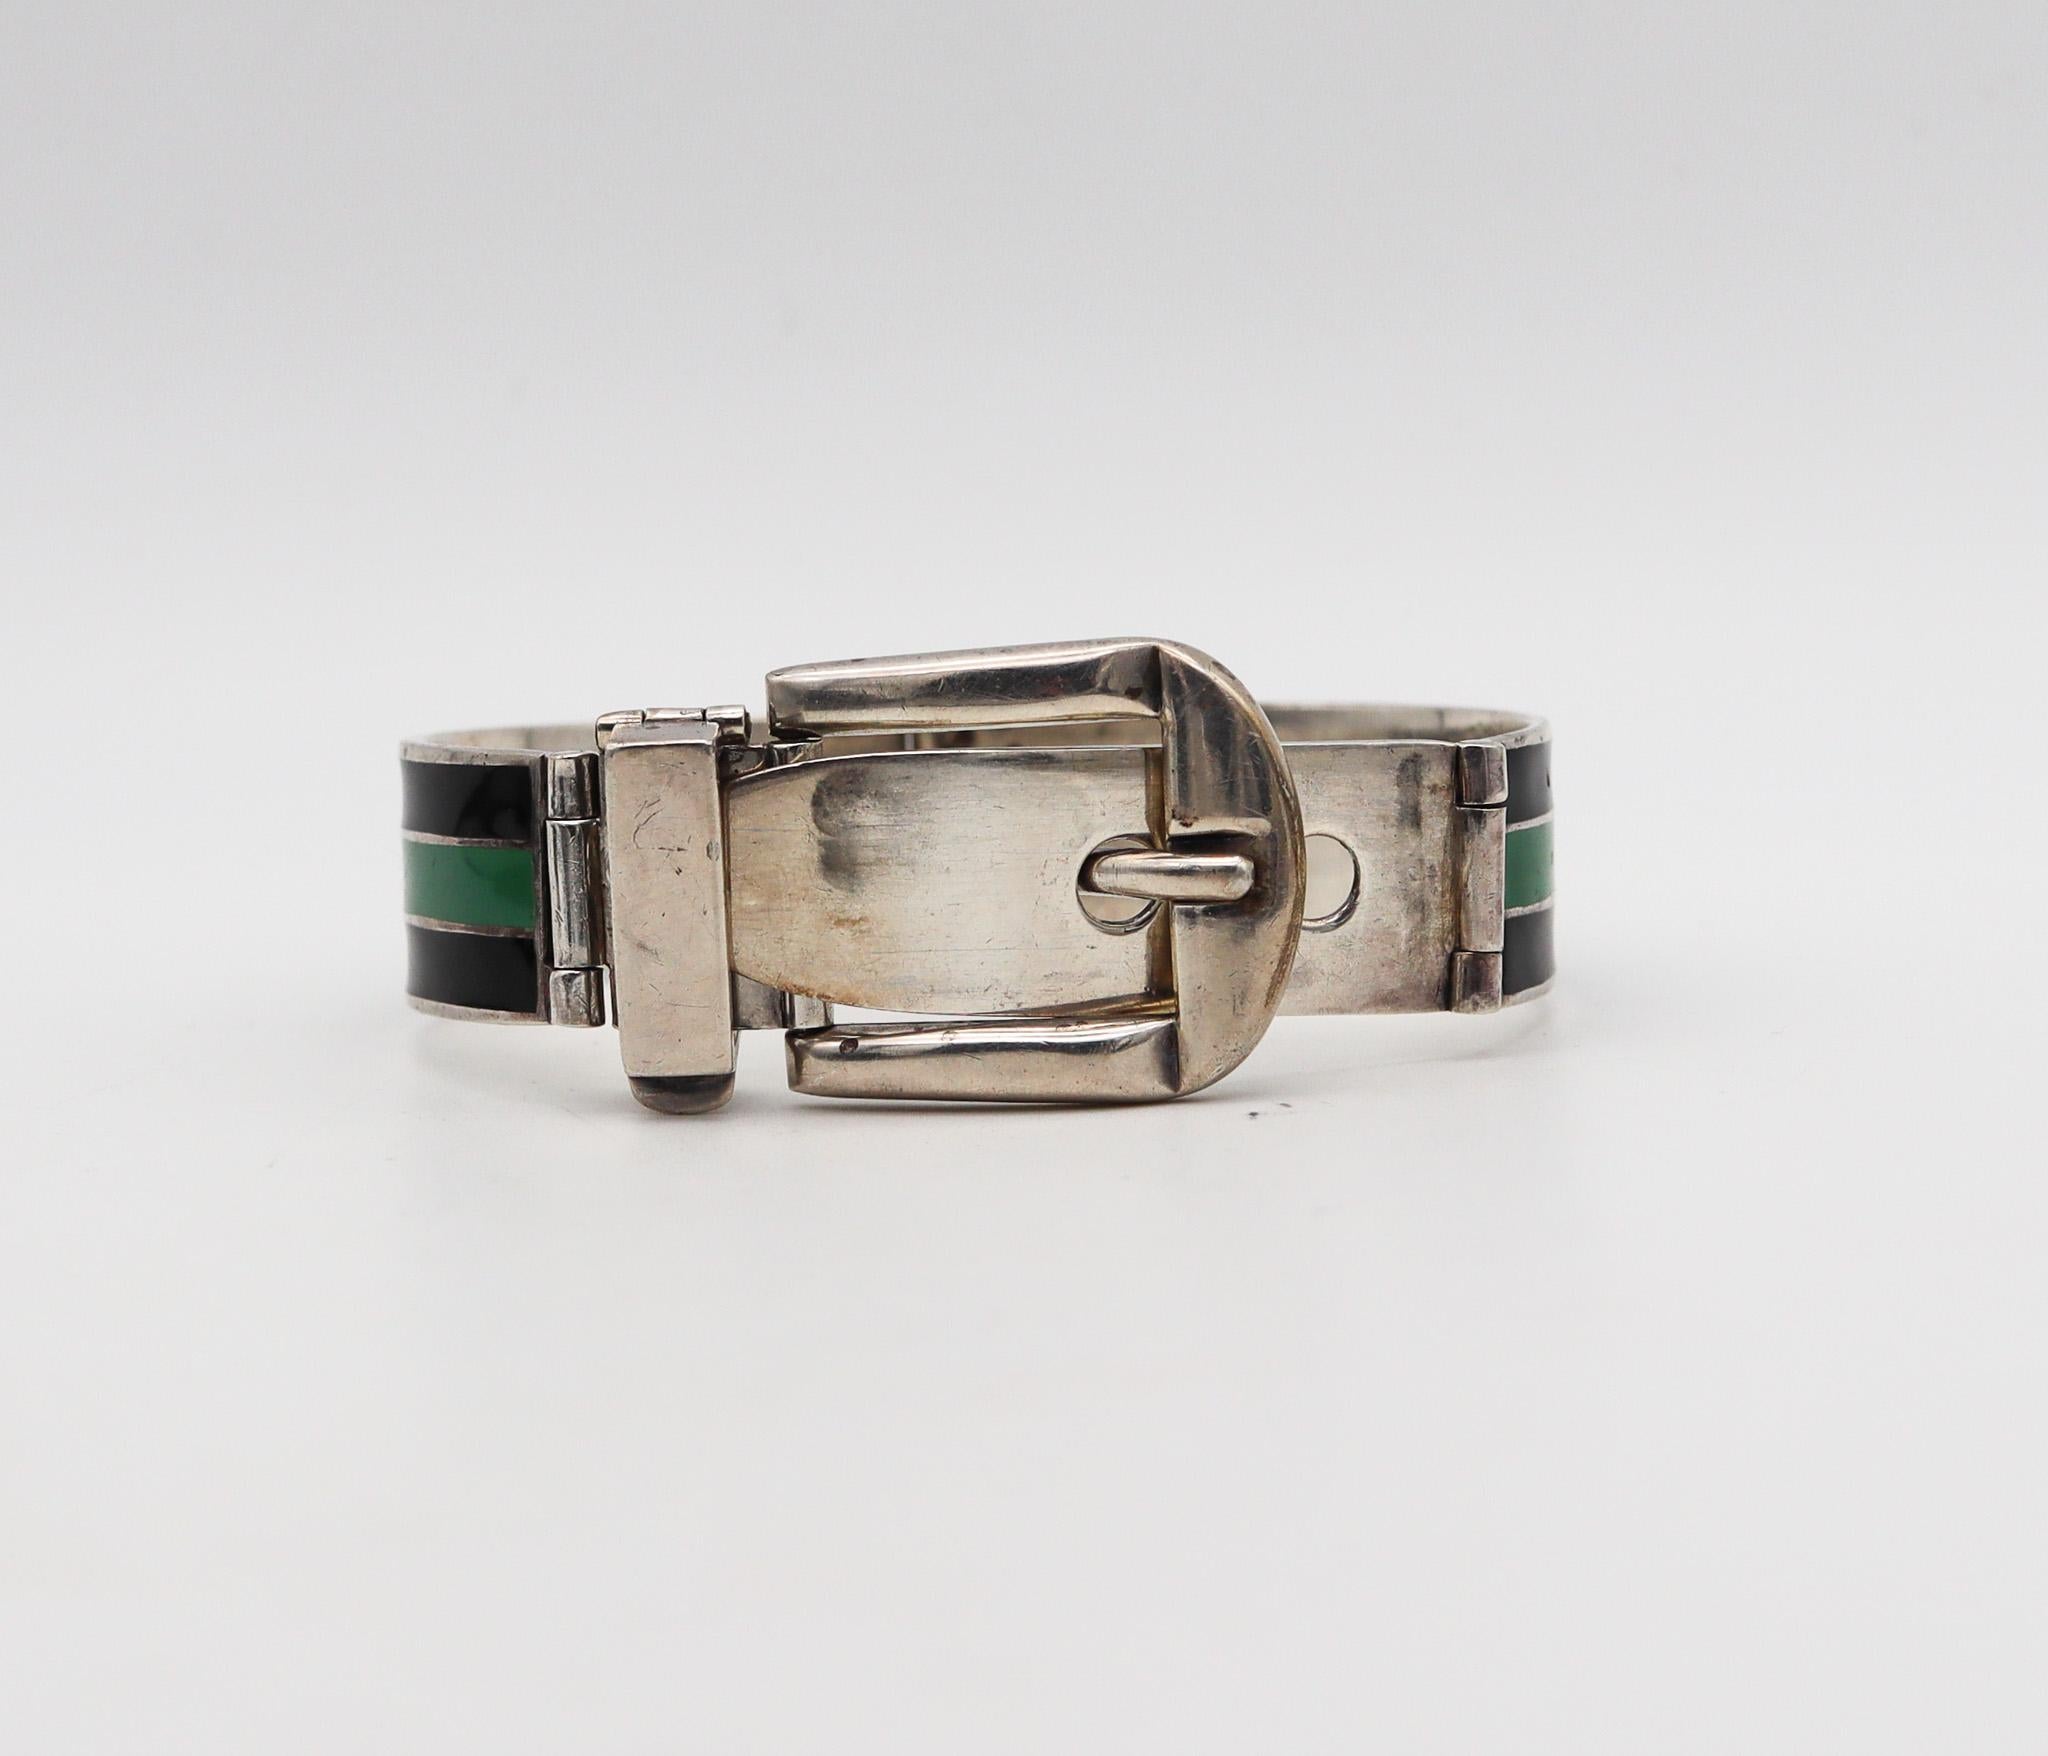 Emailliertes Armband mit Schnalle, entworfen von Gucci.

Ein seltenes Vintage-Schnallenarmband, das in Italien vom Modehaus Gucci in den 1970er Jahren kreiert wurde. Dieses ikonische Armband wurde in Form einer Schließe aus massivem 925er/999er